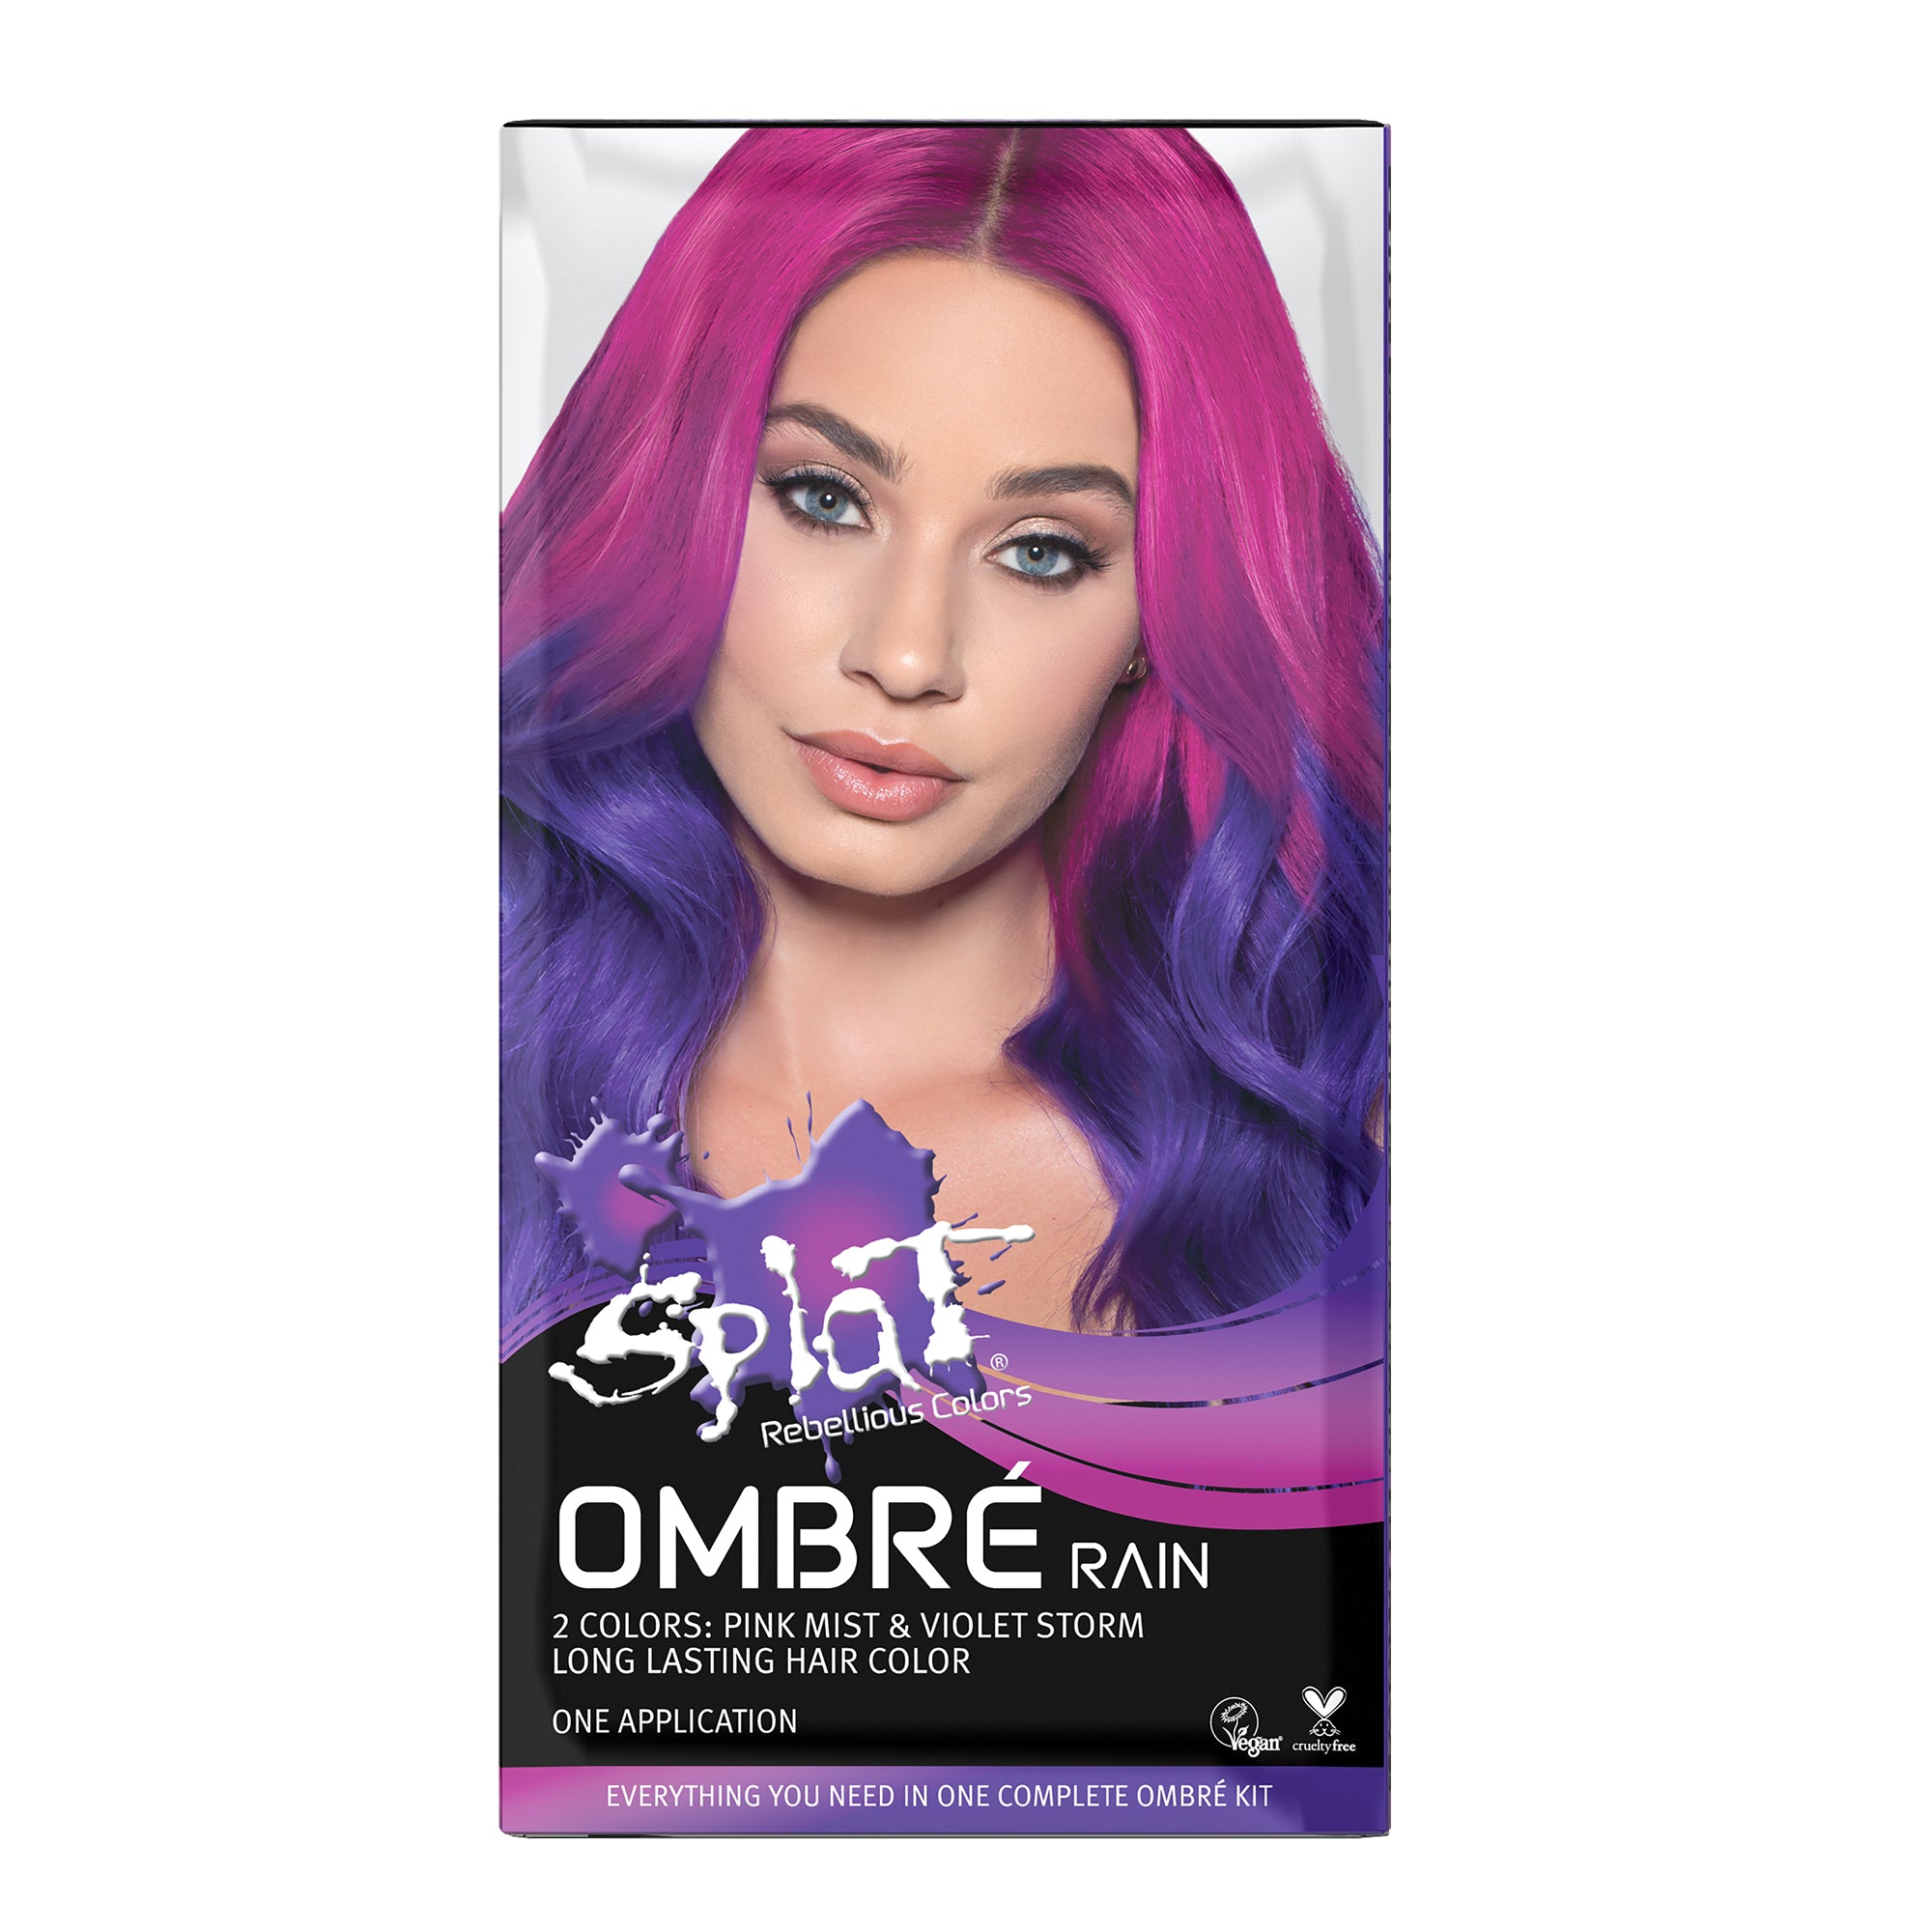 A box of Ombre Rain Hair Dye